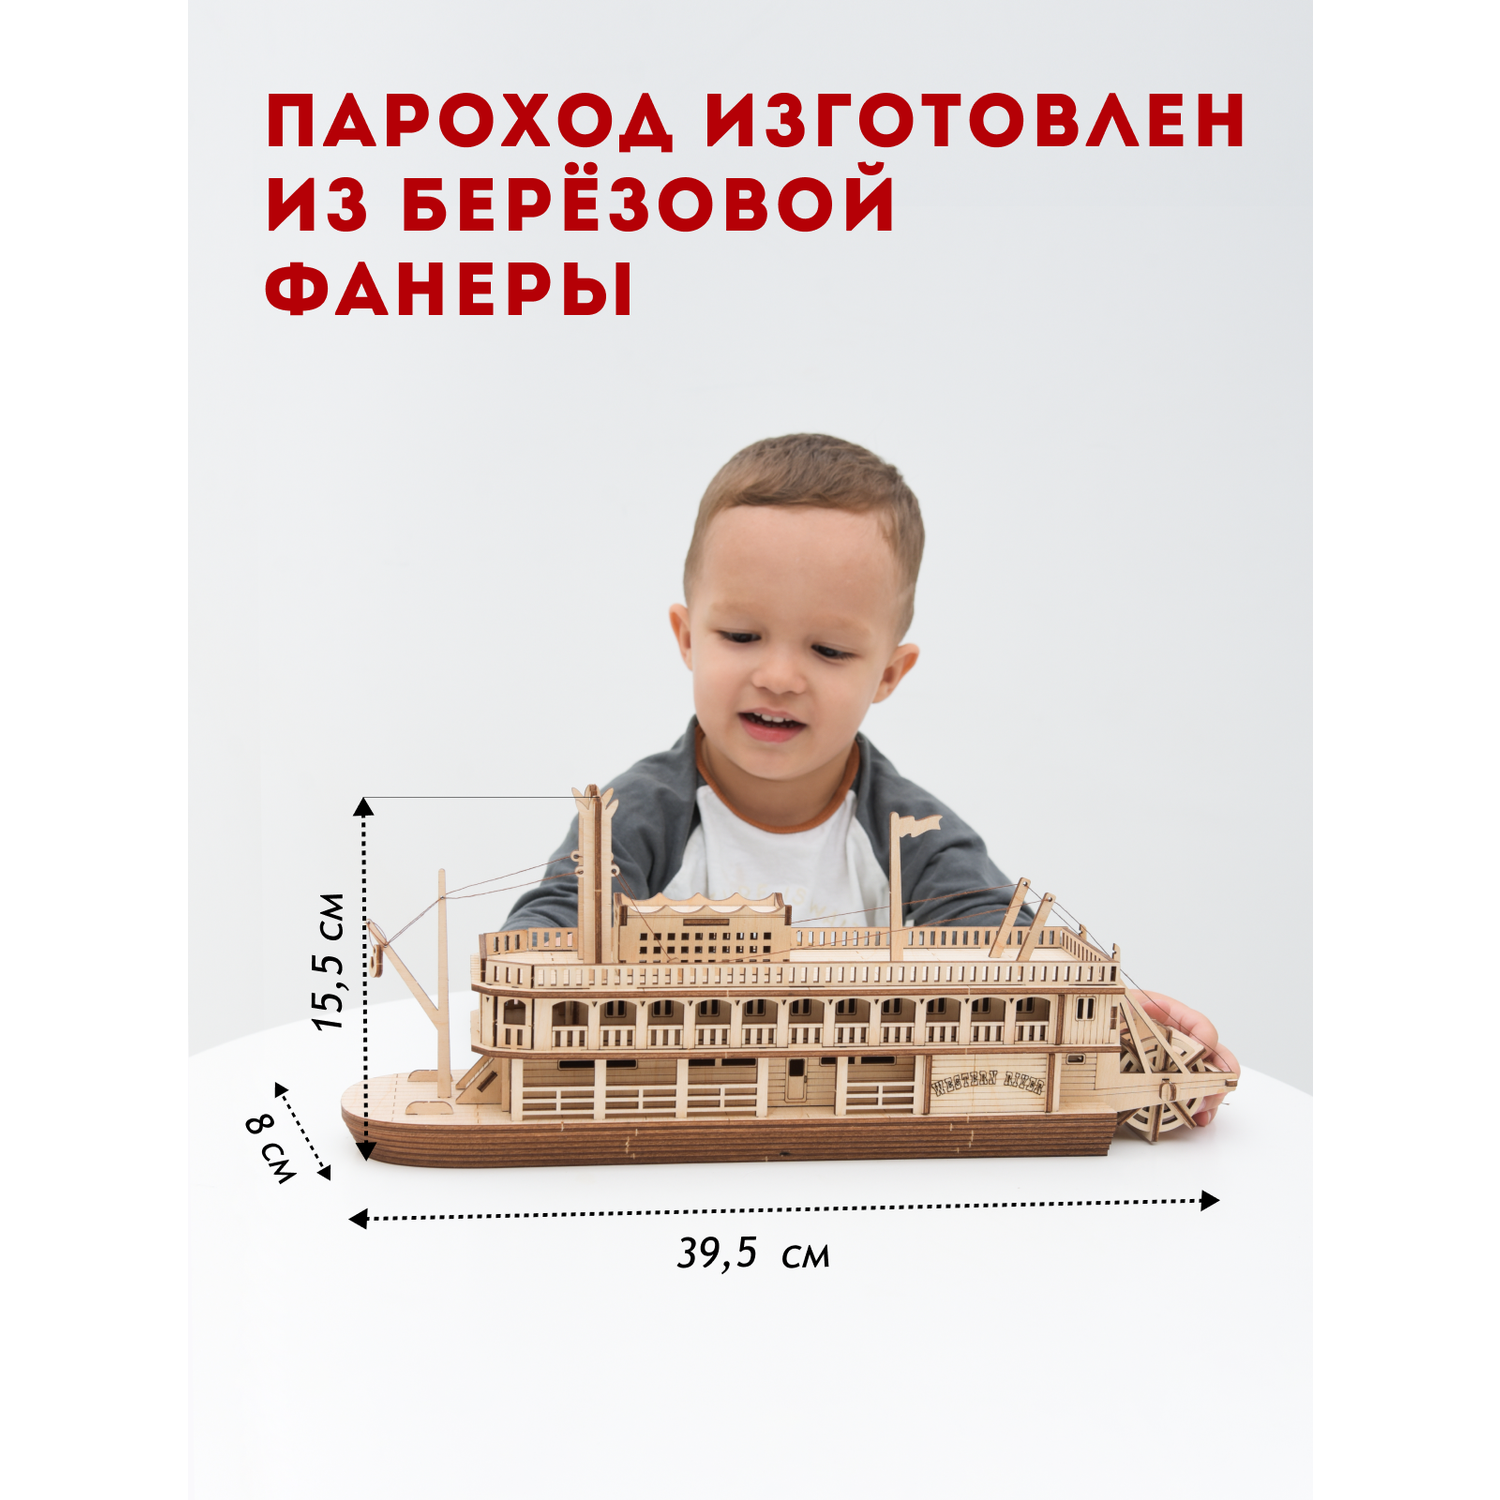 Деревянный конструктор ГРАТ Пароход Western River пароход - фото 2